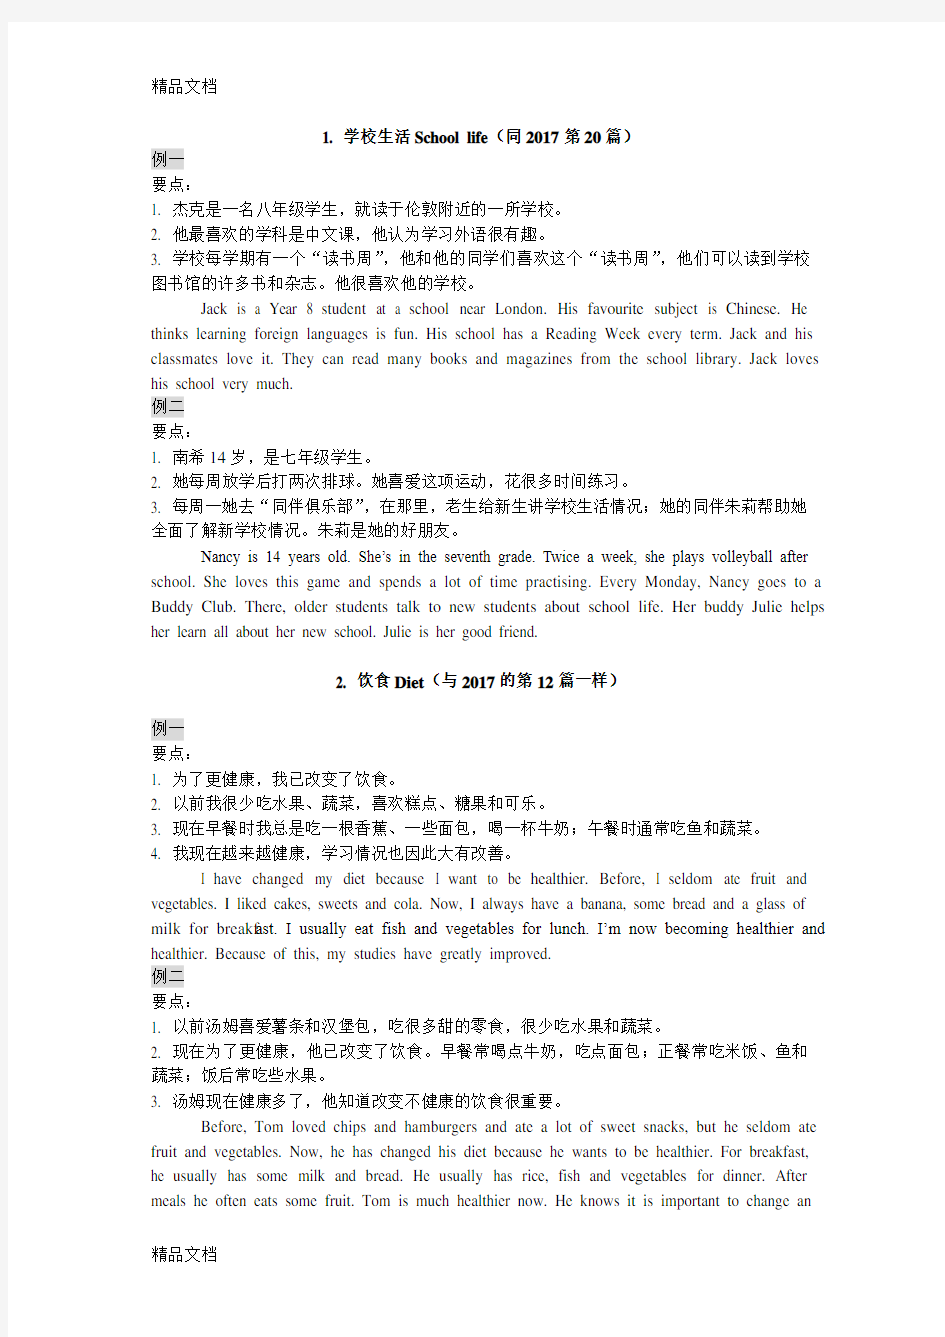 最新年江苏省人机对话考试口语训练材料(话题简述)资料